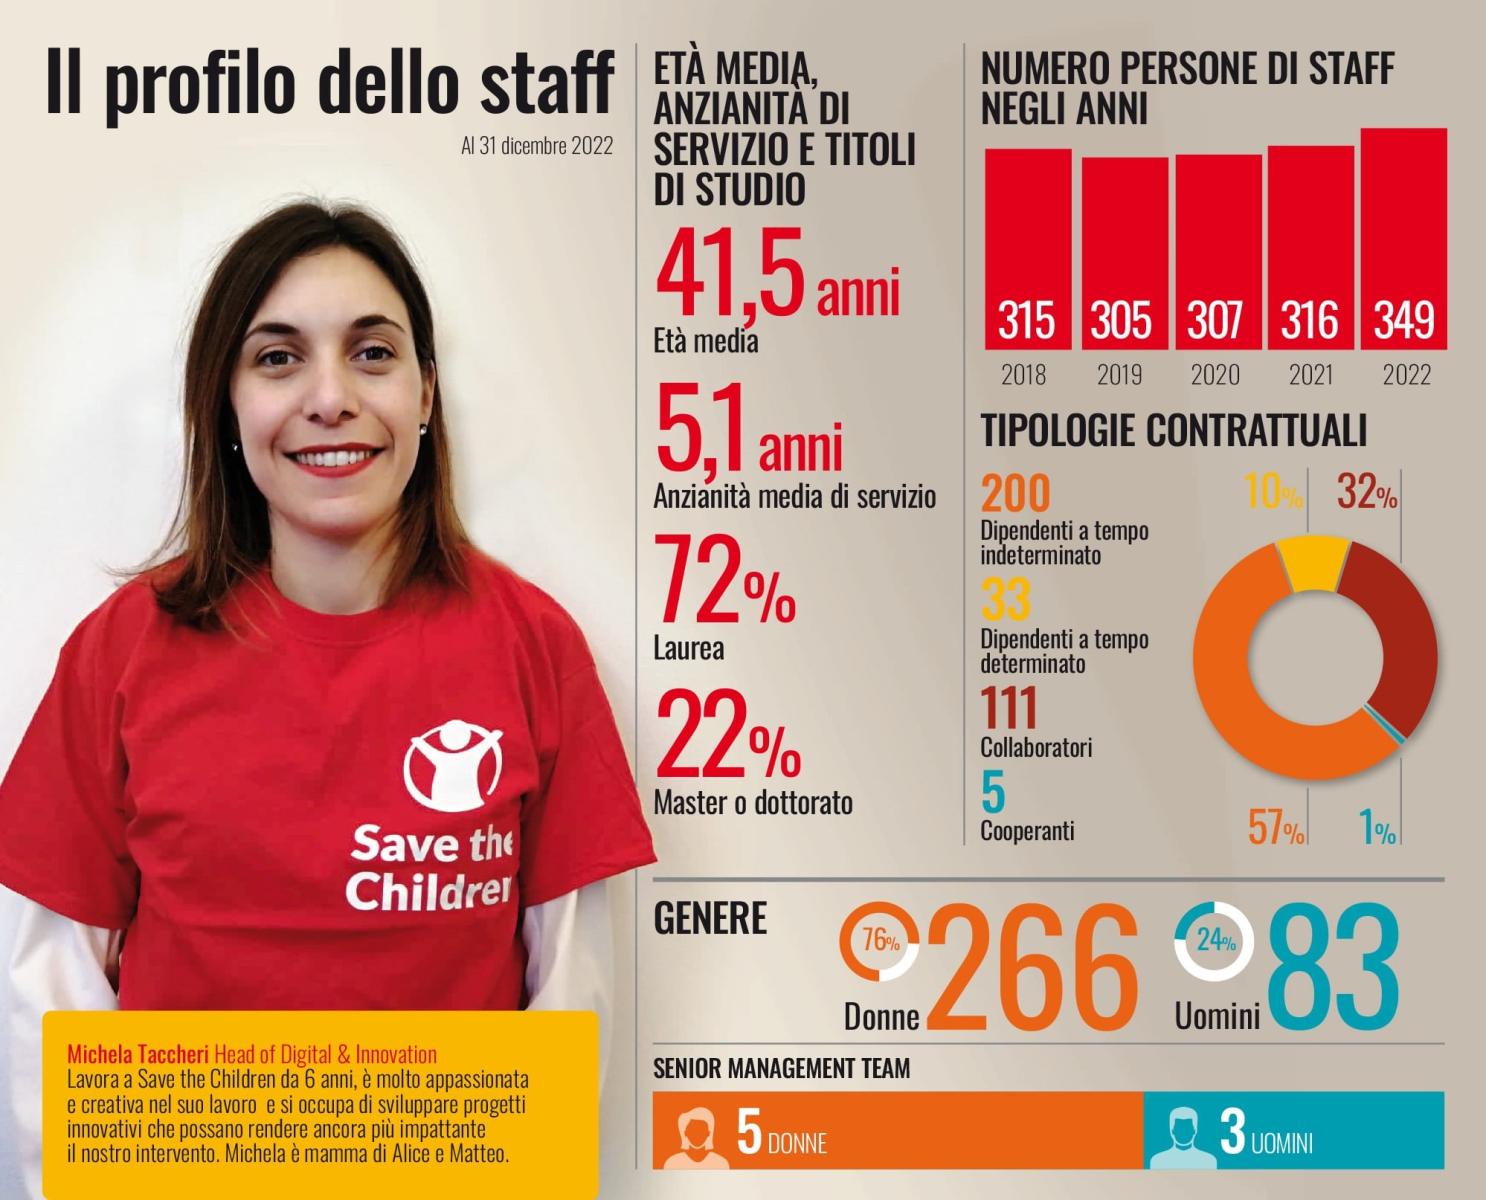 Ragazza dello staff con la maglietta rossa simbolo dell'organizzazione con a lato un infografica con inserite le percentuali sulle risorse umane in servizio